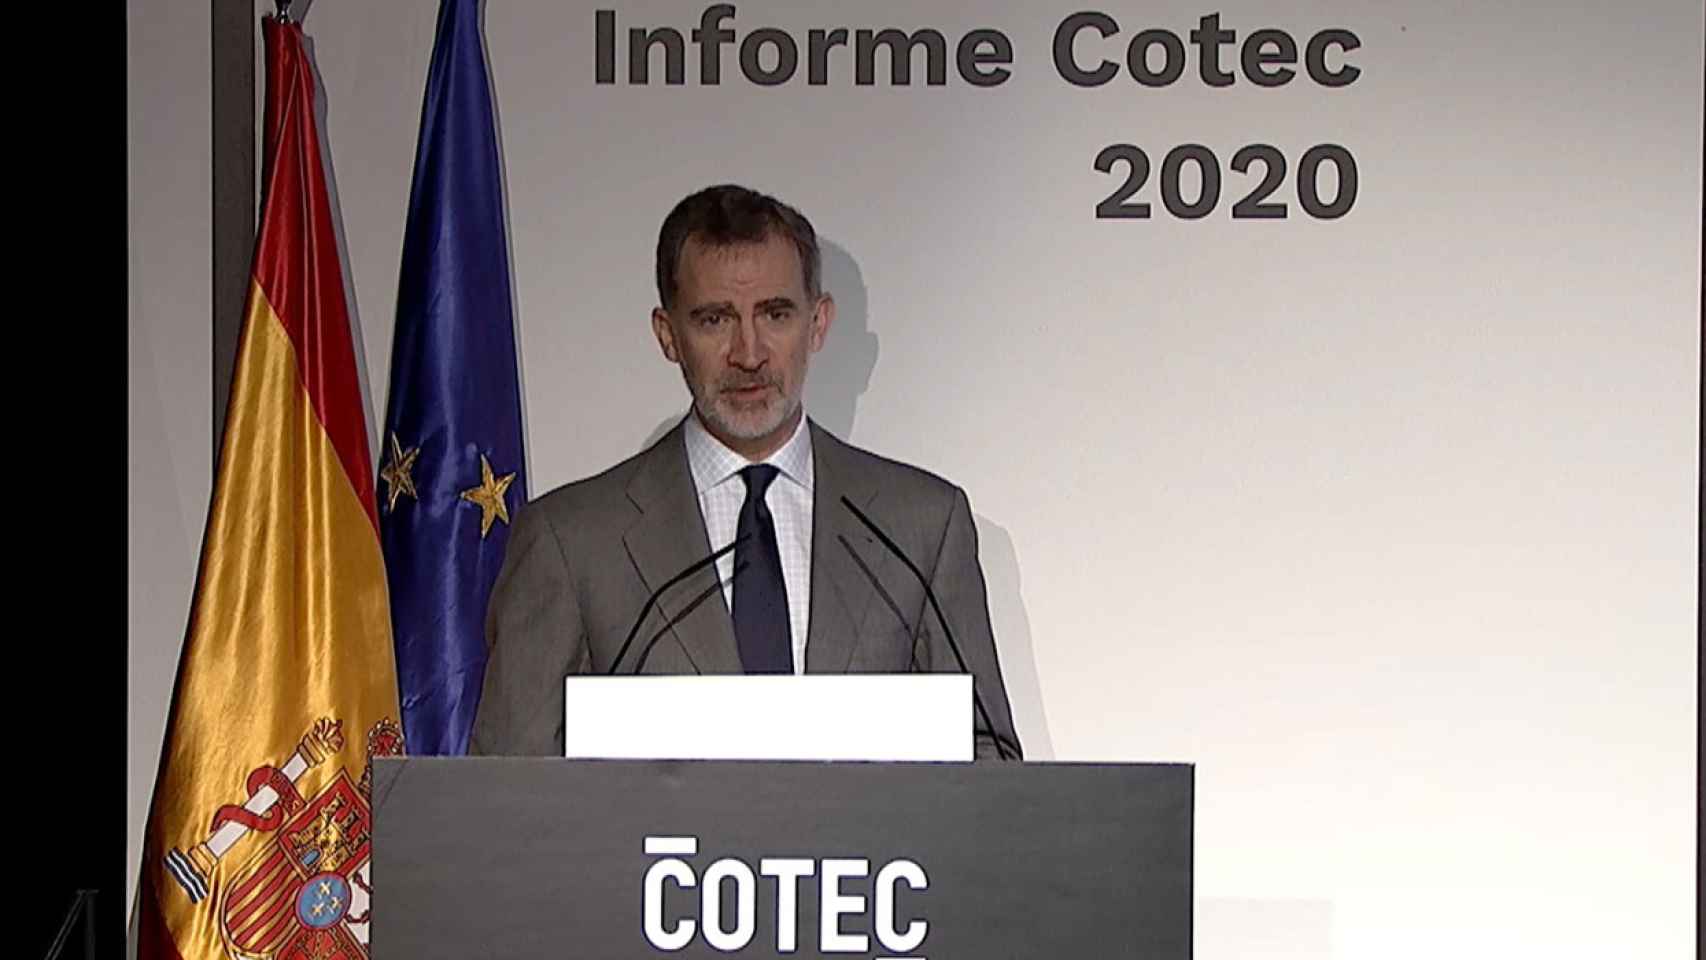 El Rey Felipe VI durante la presentación del Informe Cotec 2020.